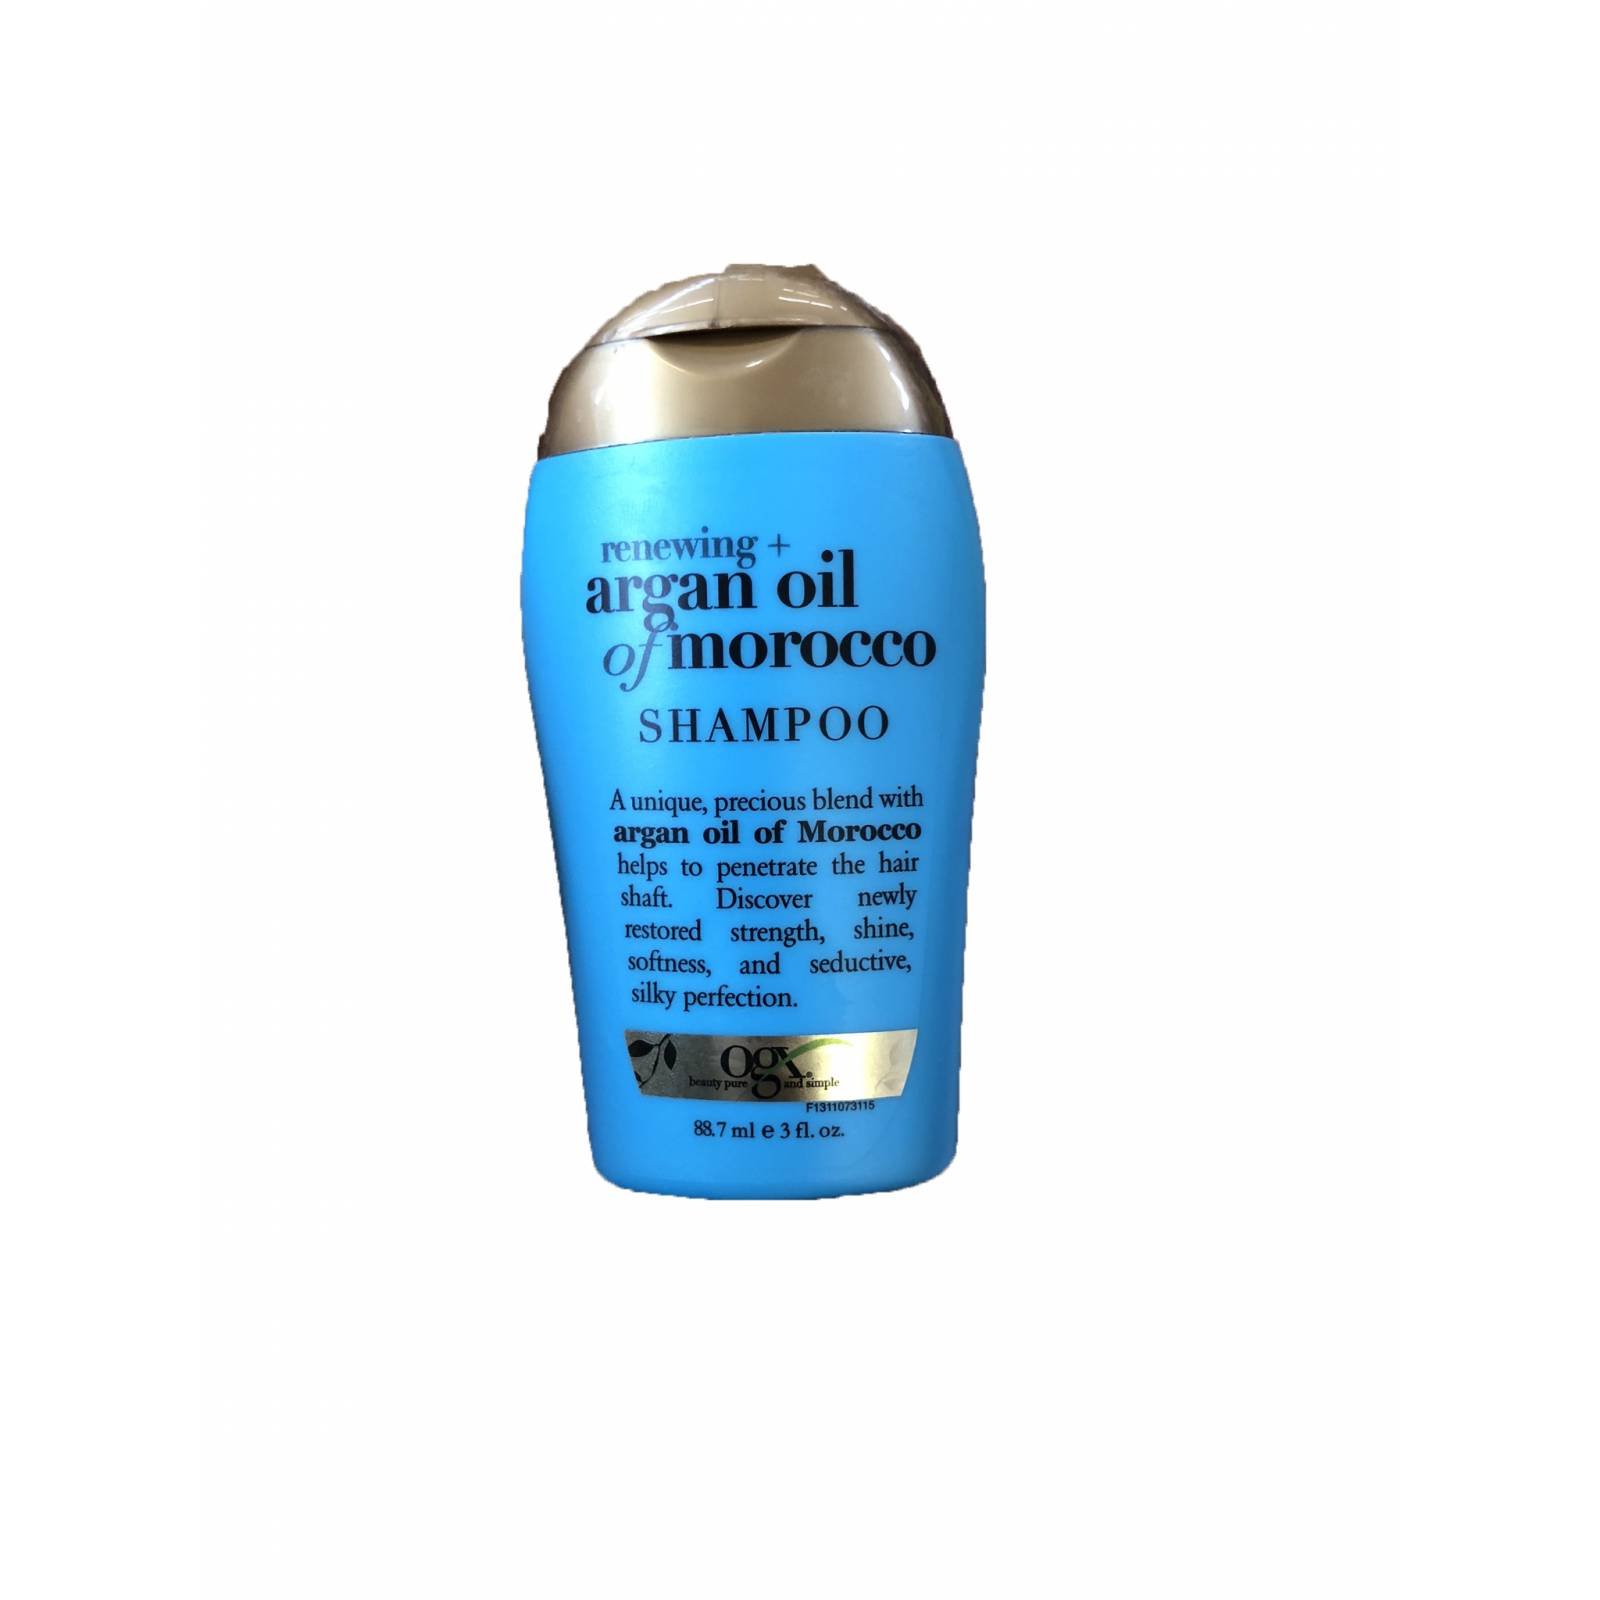 Shampoo  liquido tamaño de viaje 88.7 ml Organix OGX Sin sulfatos y sin sales o parabenos - Argan Oil, aceite de marruecos.